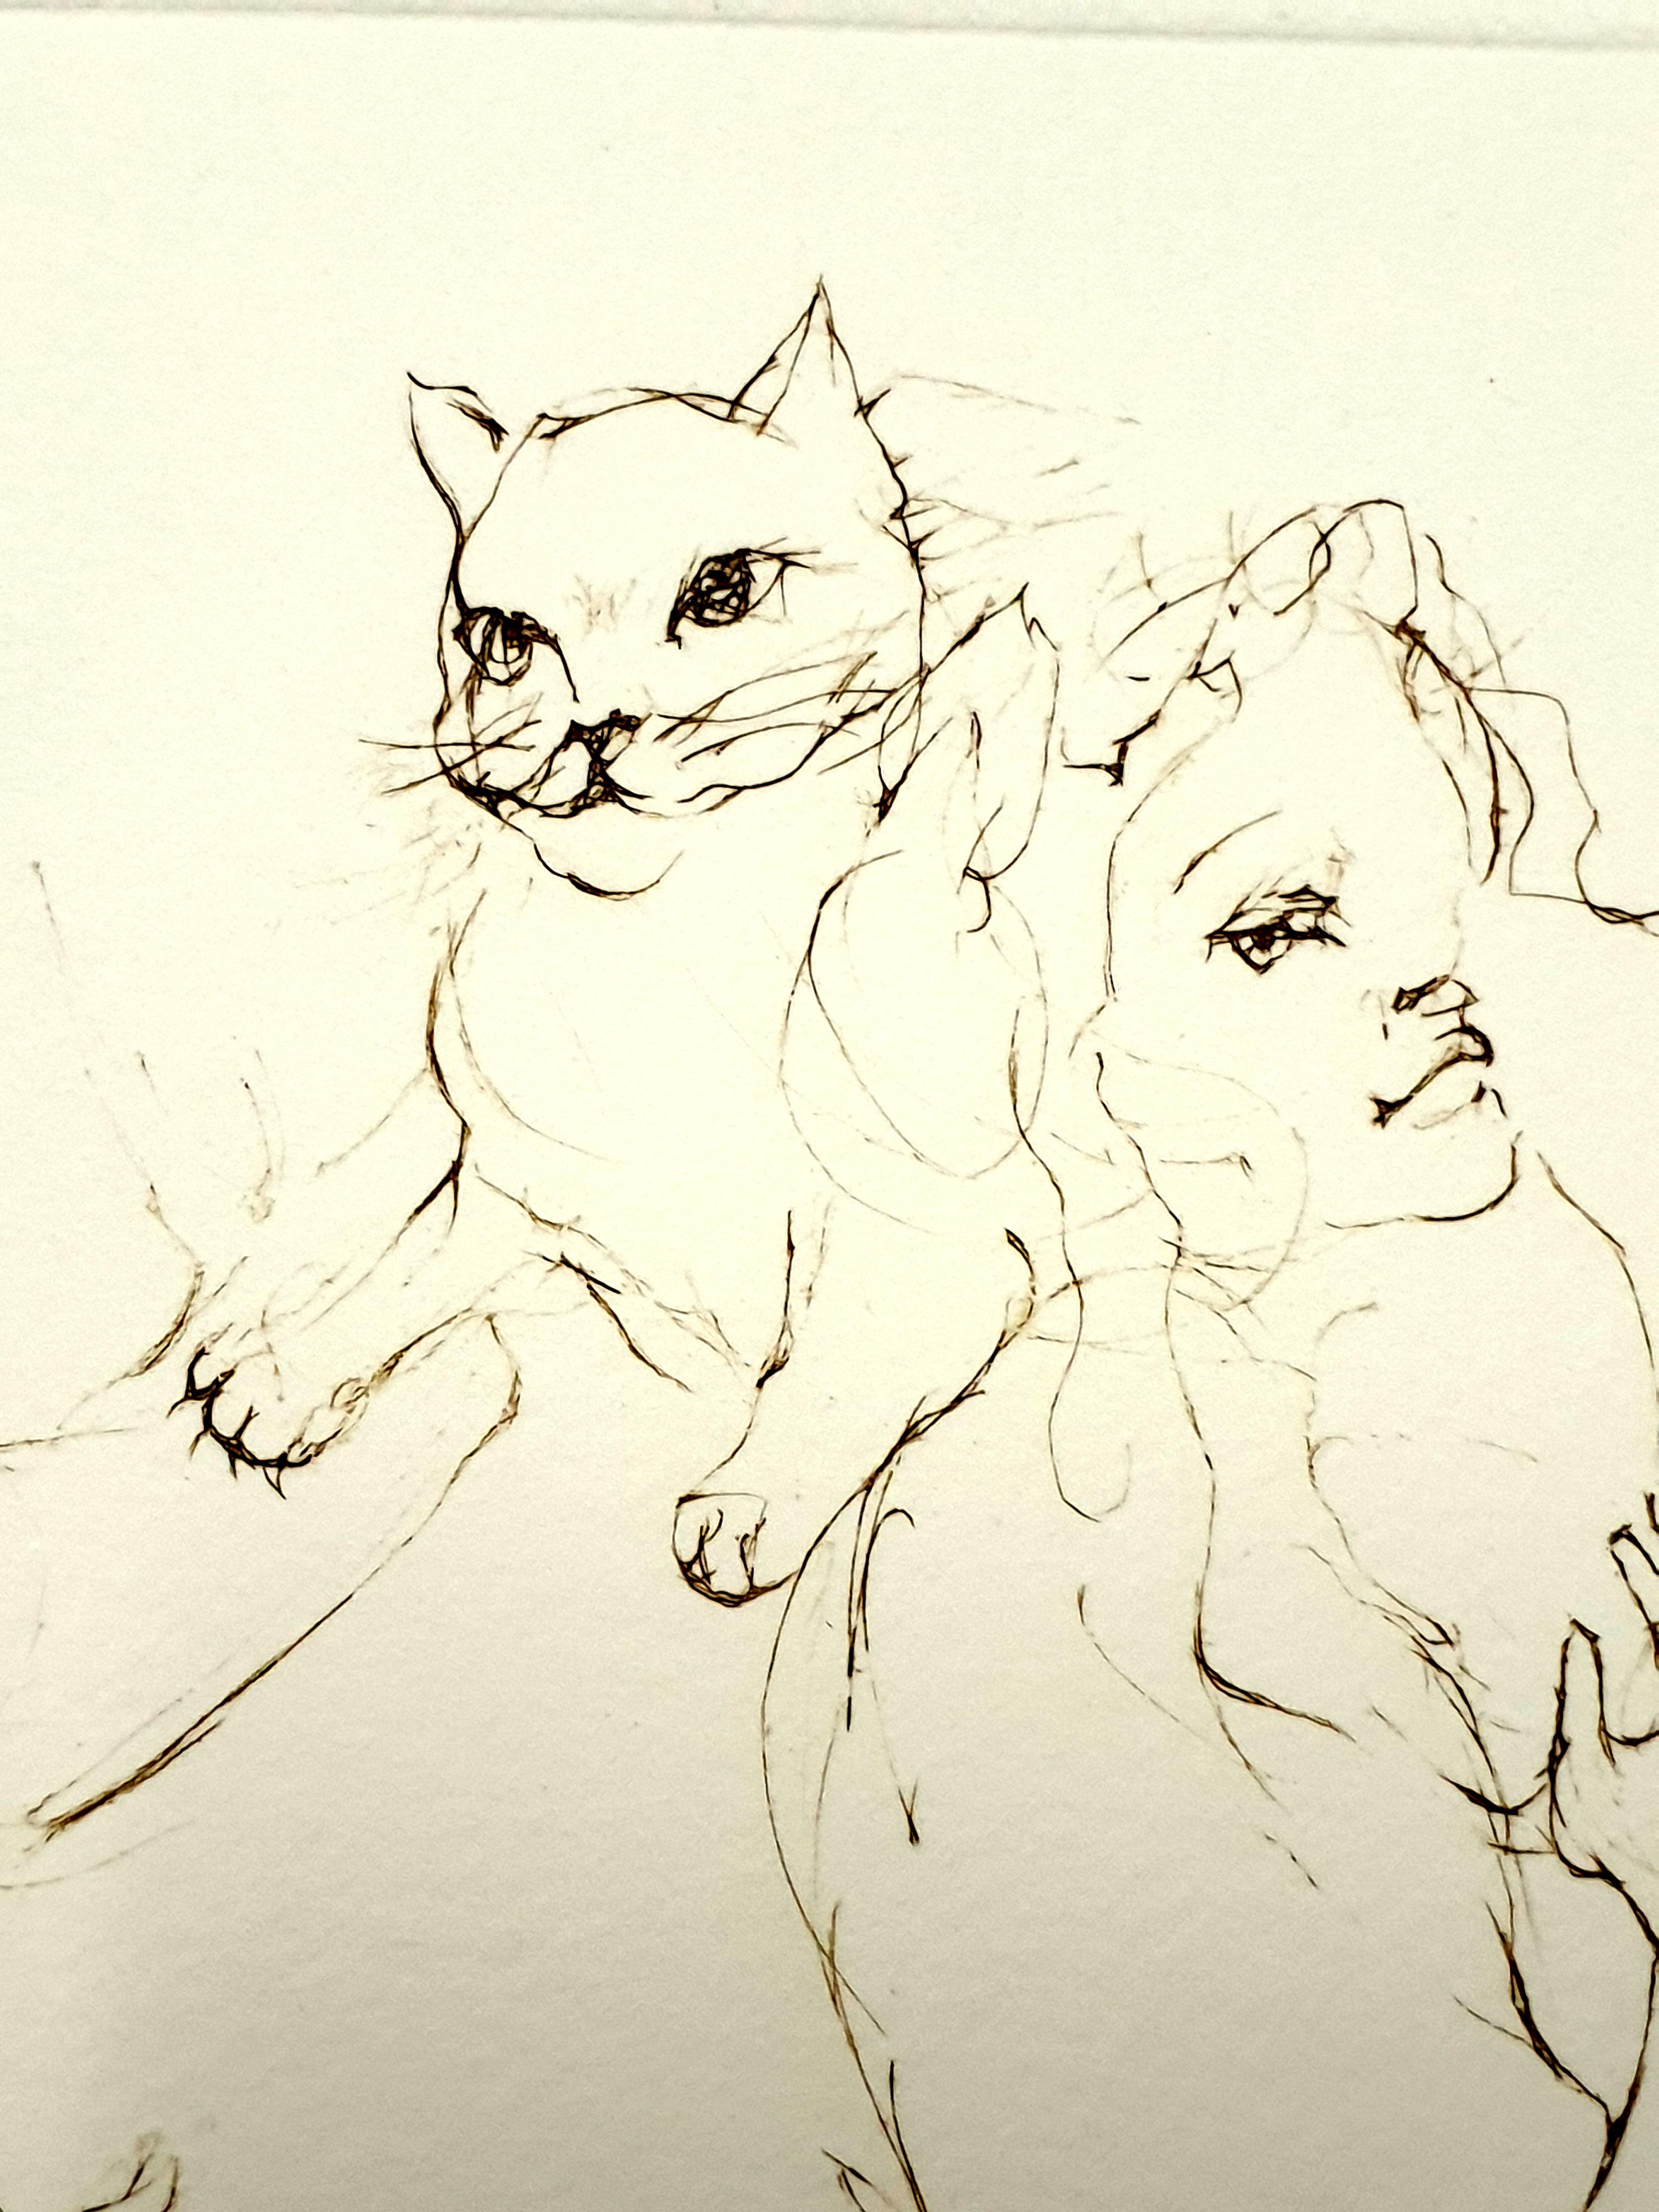 Leonor Fini - Playful Cat - Original Handsigned Lithograph
Les Elus de la Nuit
1986
Conditions: excellent
Handsigned and Numbered
Edition: 230
Dimensions: 38 x 28 cm 
Editions: Trinckvel, Paris